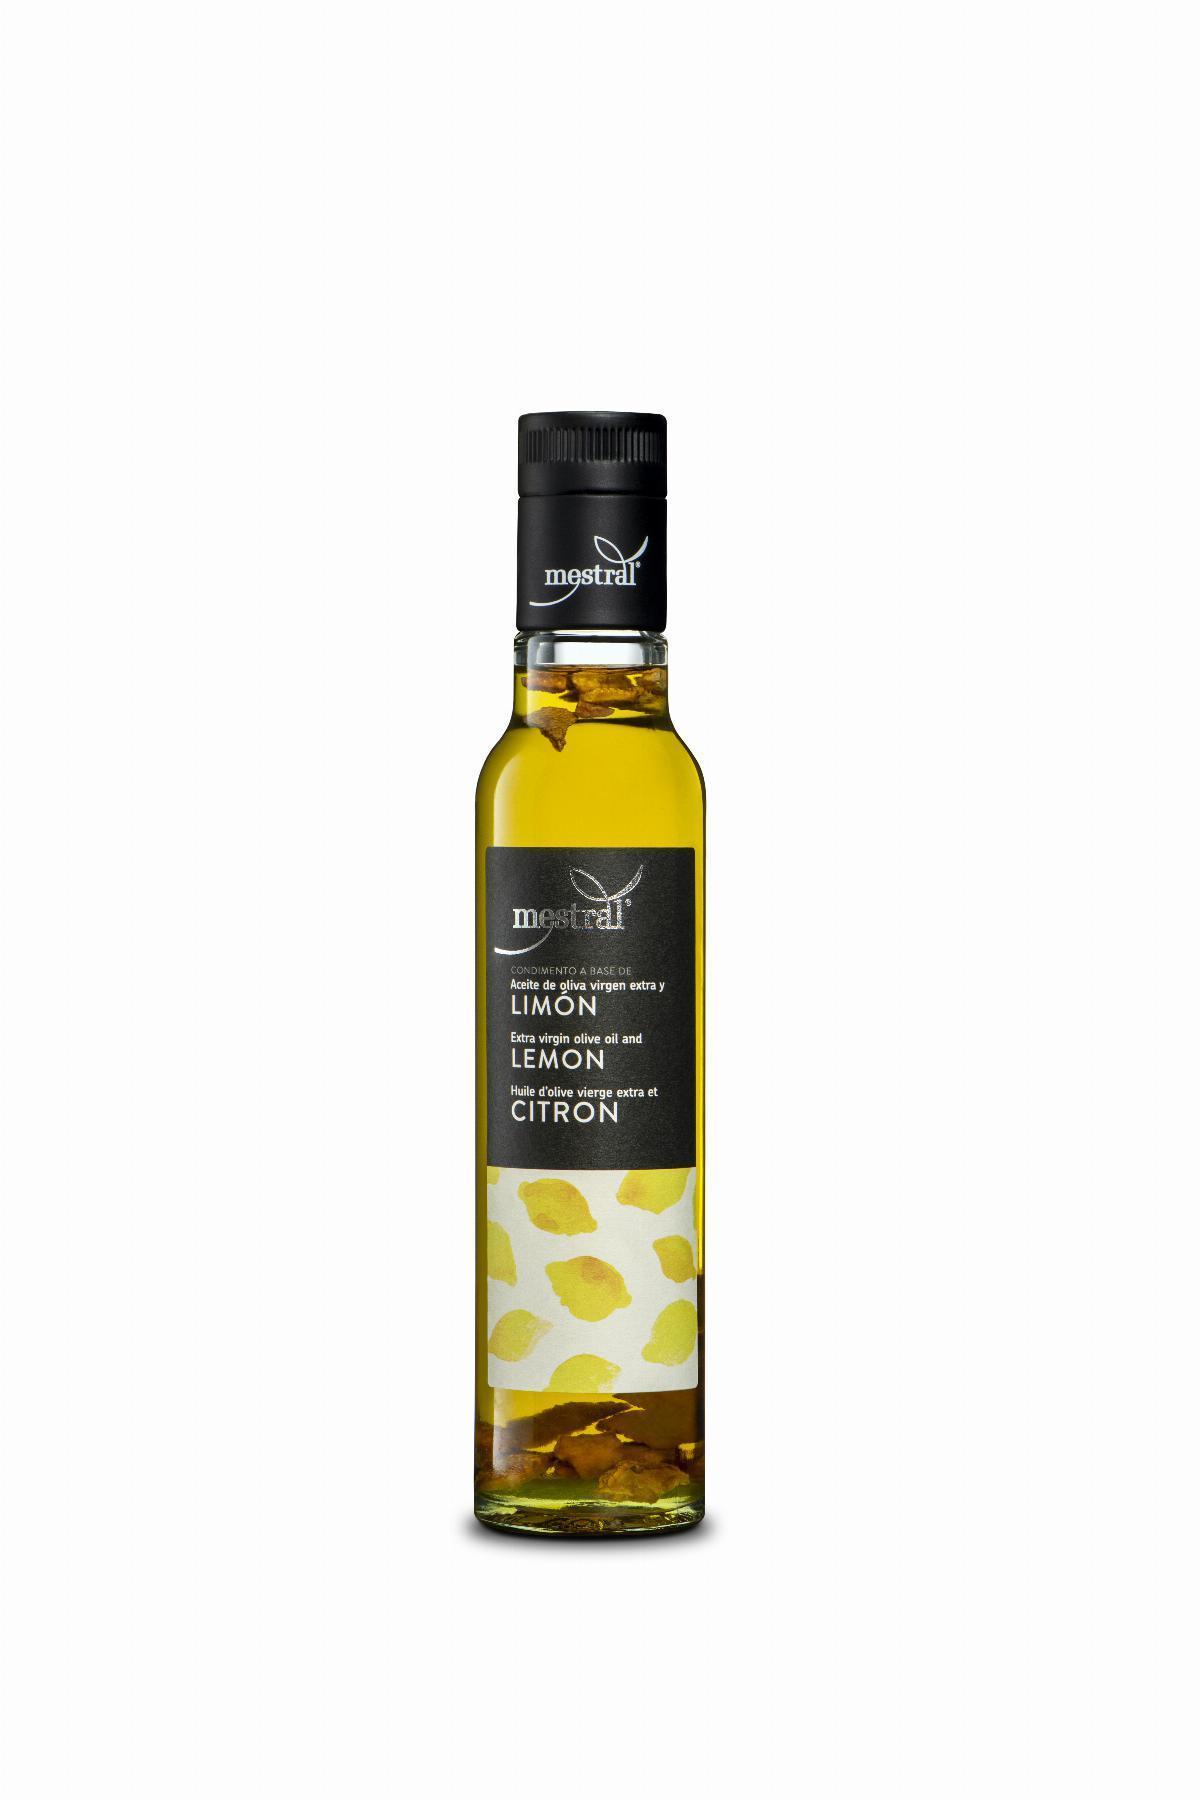 Olis i infusionats - Condiment preparat a base de oli d'oliva i llimona Mestral ampolla 250 ml - Mestral Cambrils